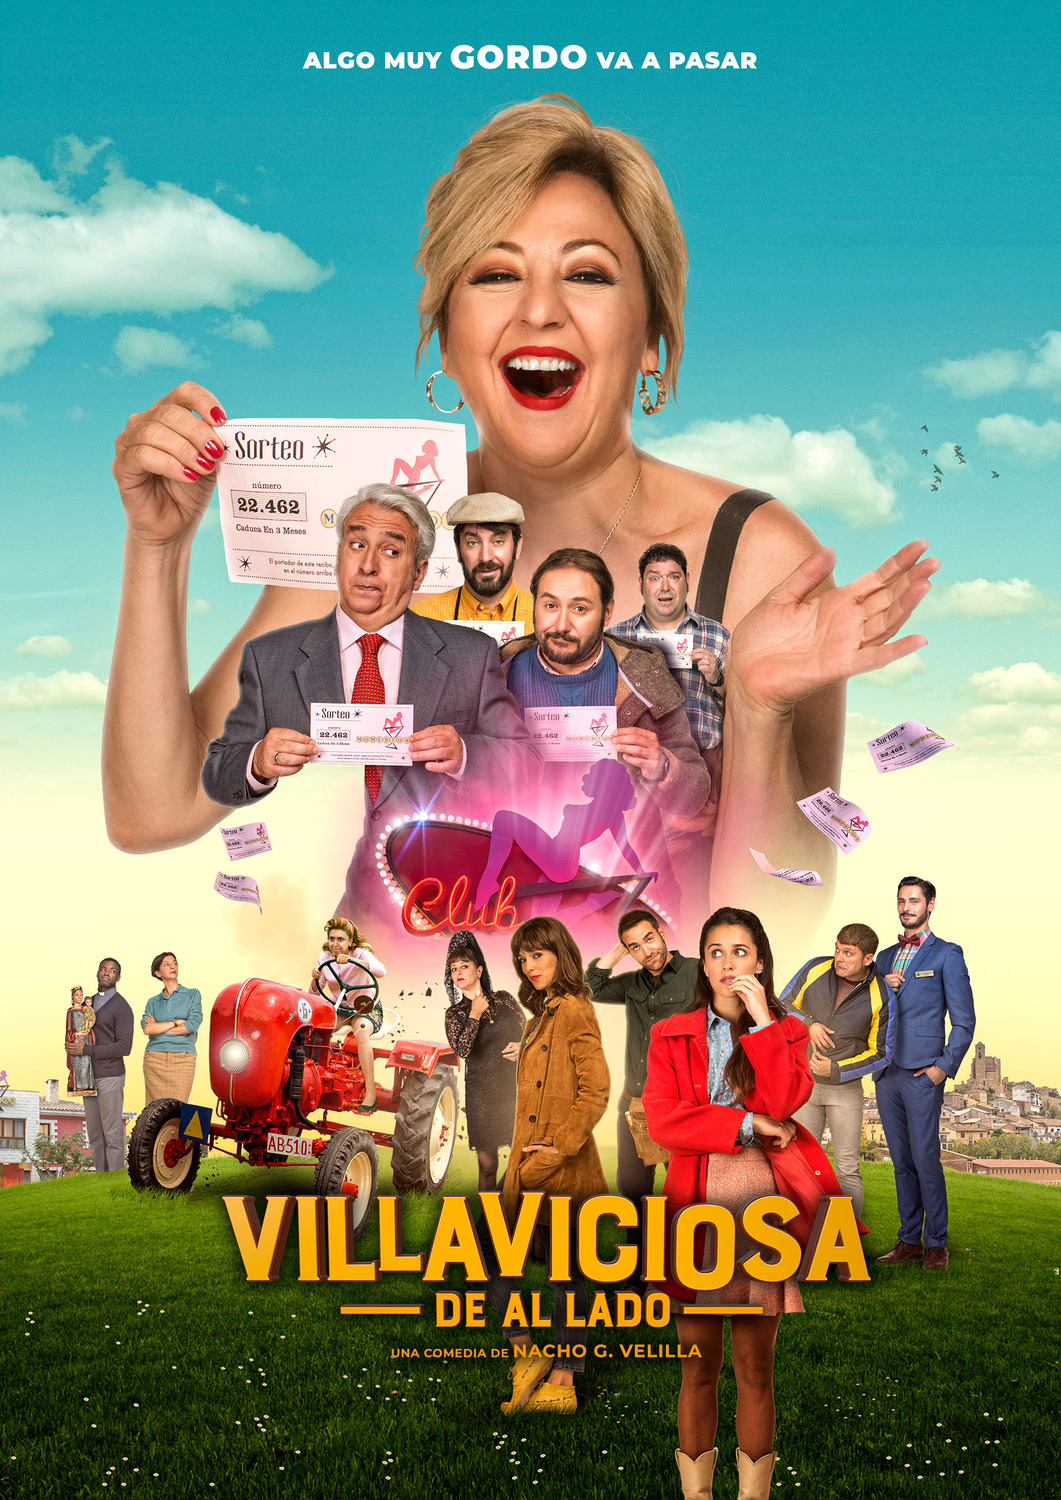 Extra Large Movie Poster Image for Villaviciosa de al lado (#2 of 8)